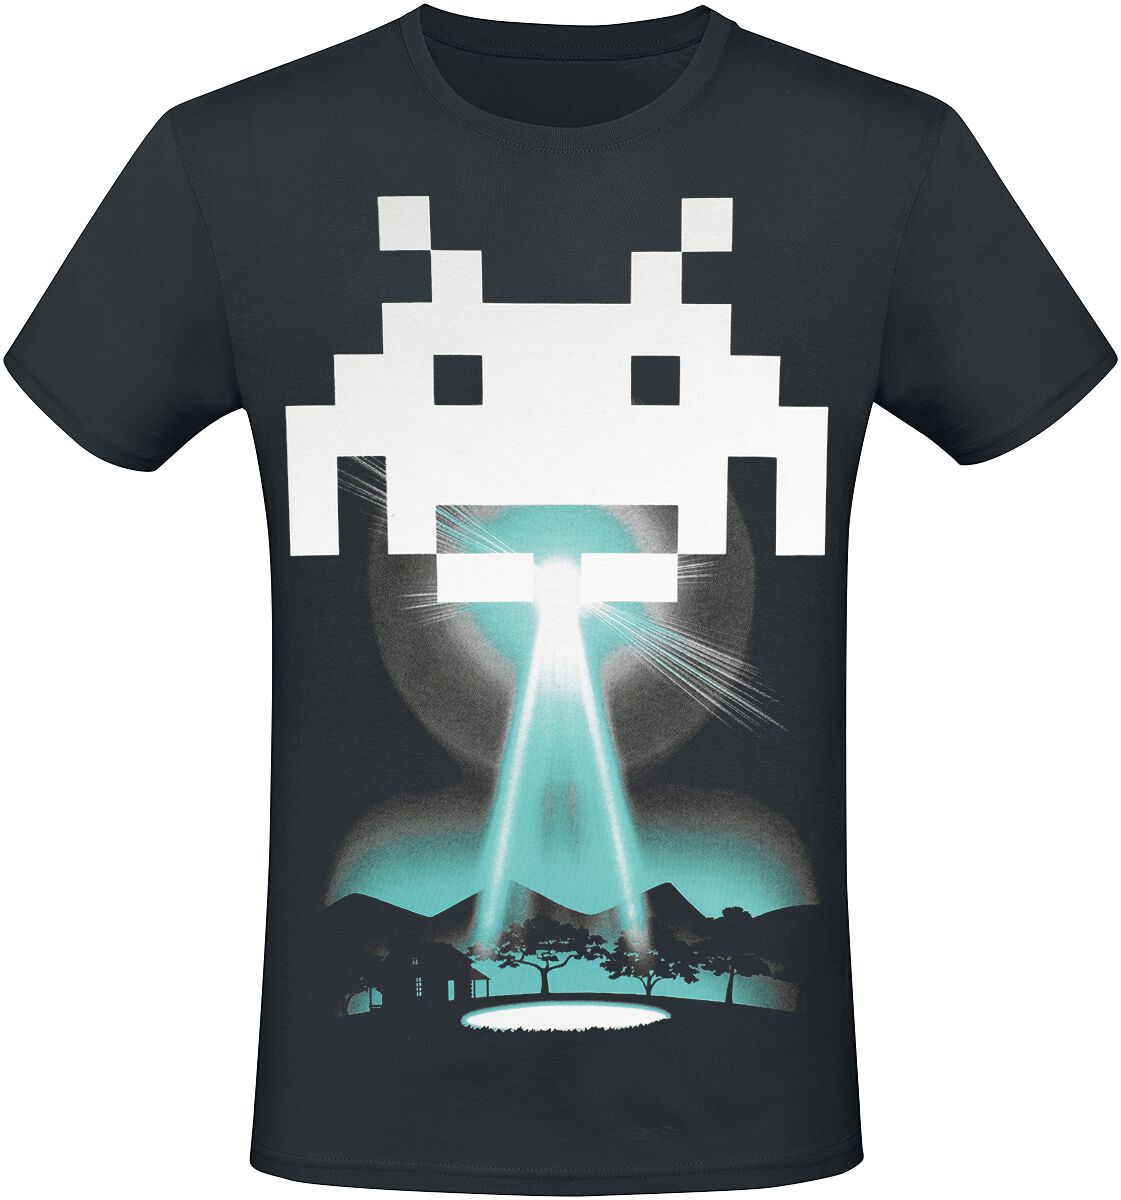 Space Invaders - Gaming T-Shirt - Beam Me Up Alien - XS bis 3XL - für Männer - Größe S - schwarz  - EMP exklusives Merchandise!